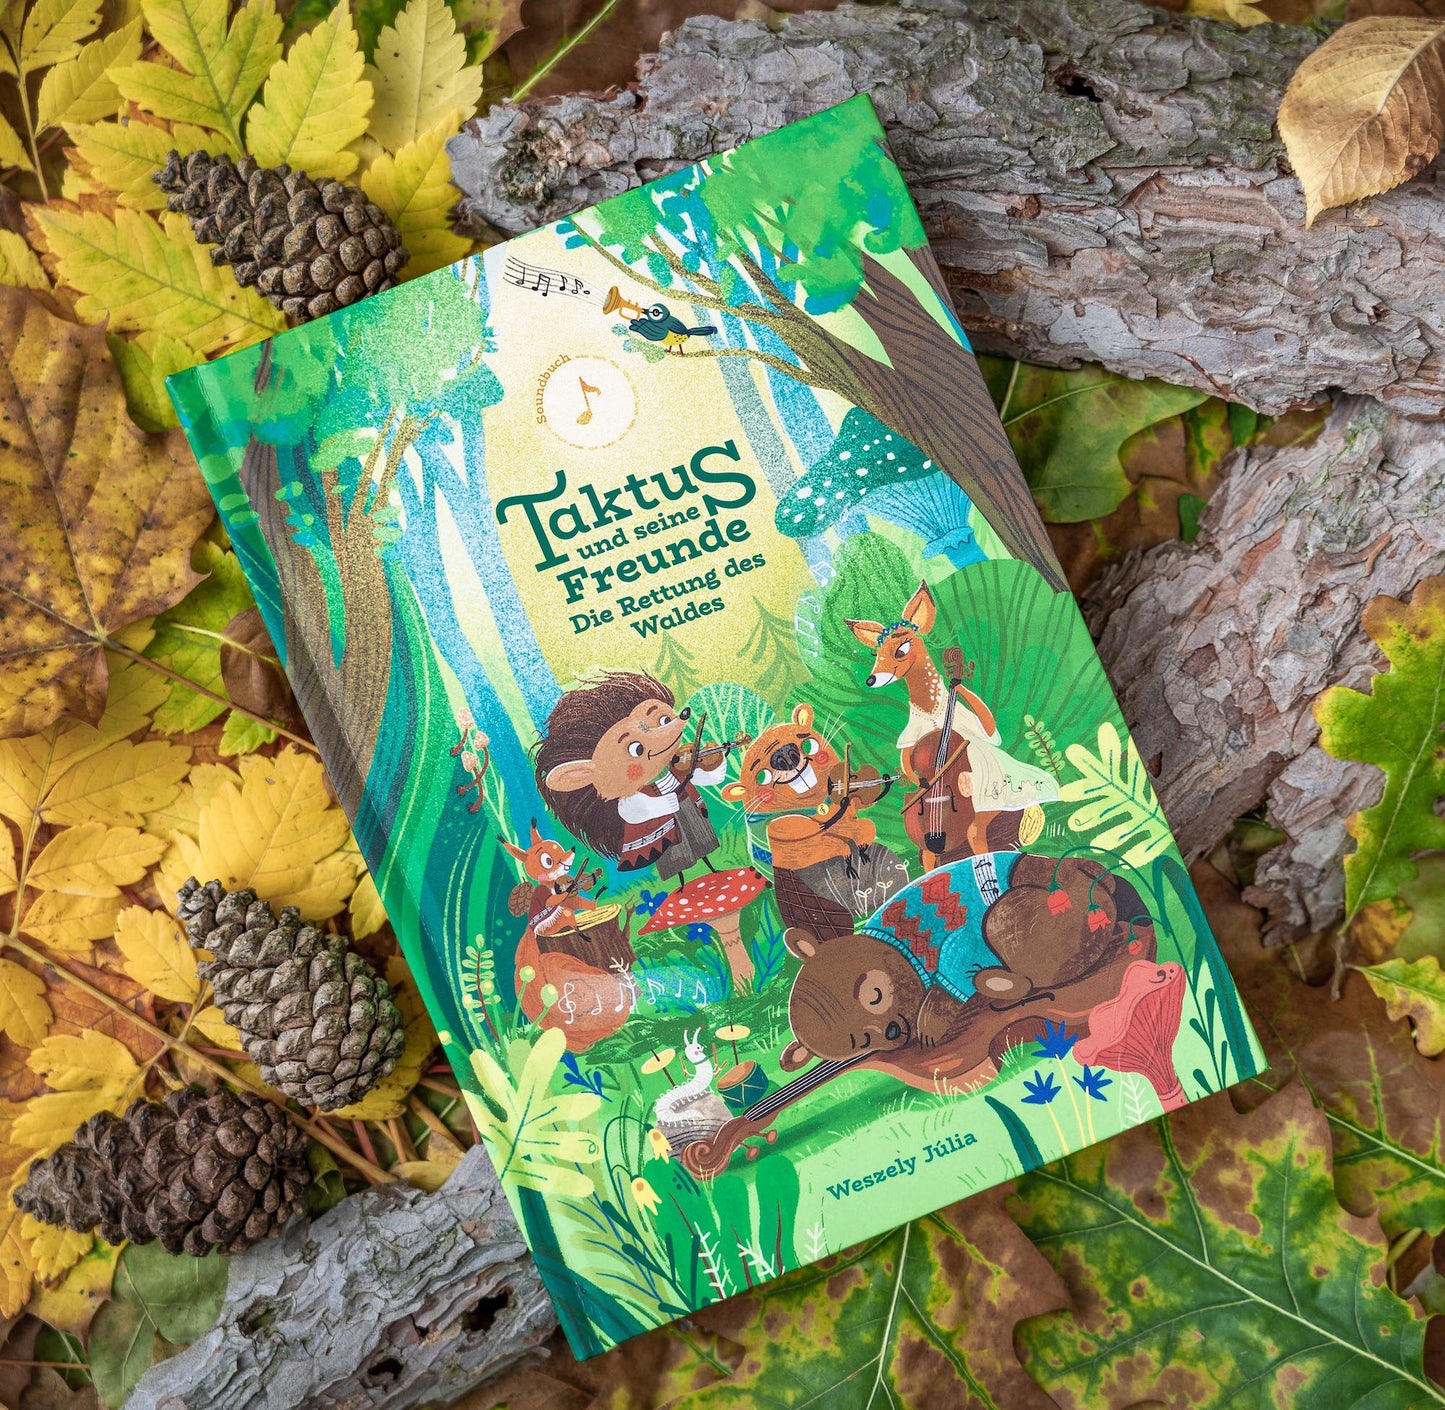 Soundbuch "Taktus und seine Freunde - die Rettung des Waldes" liegt auf Blättern und Rinde